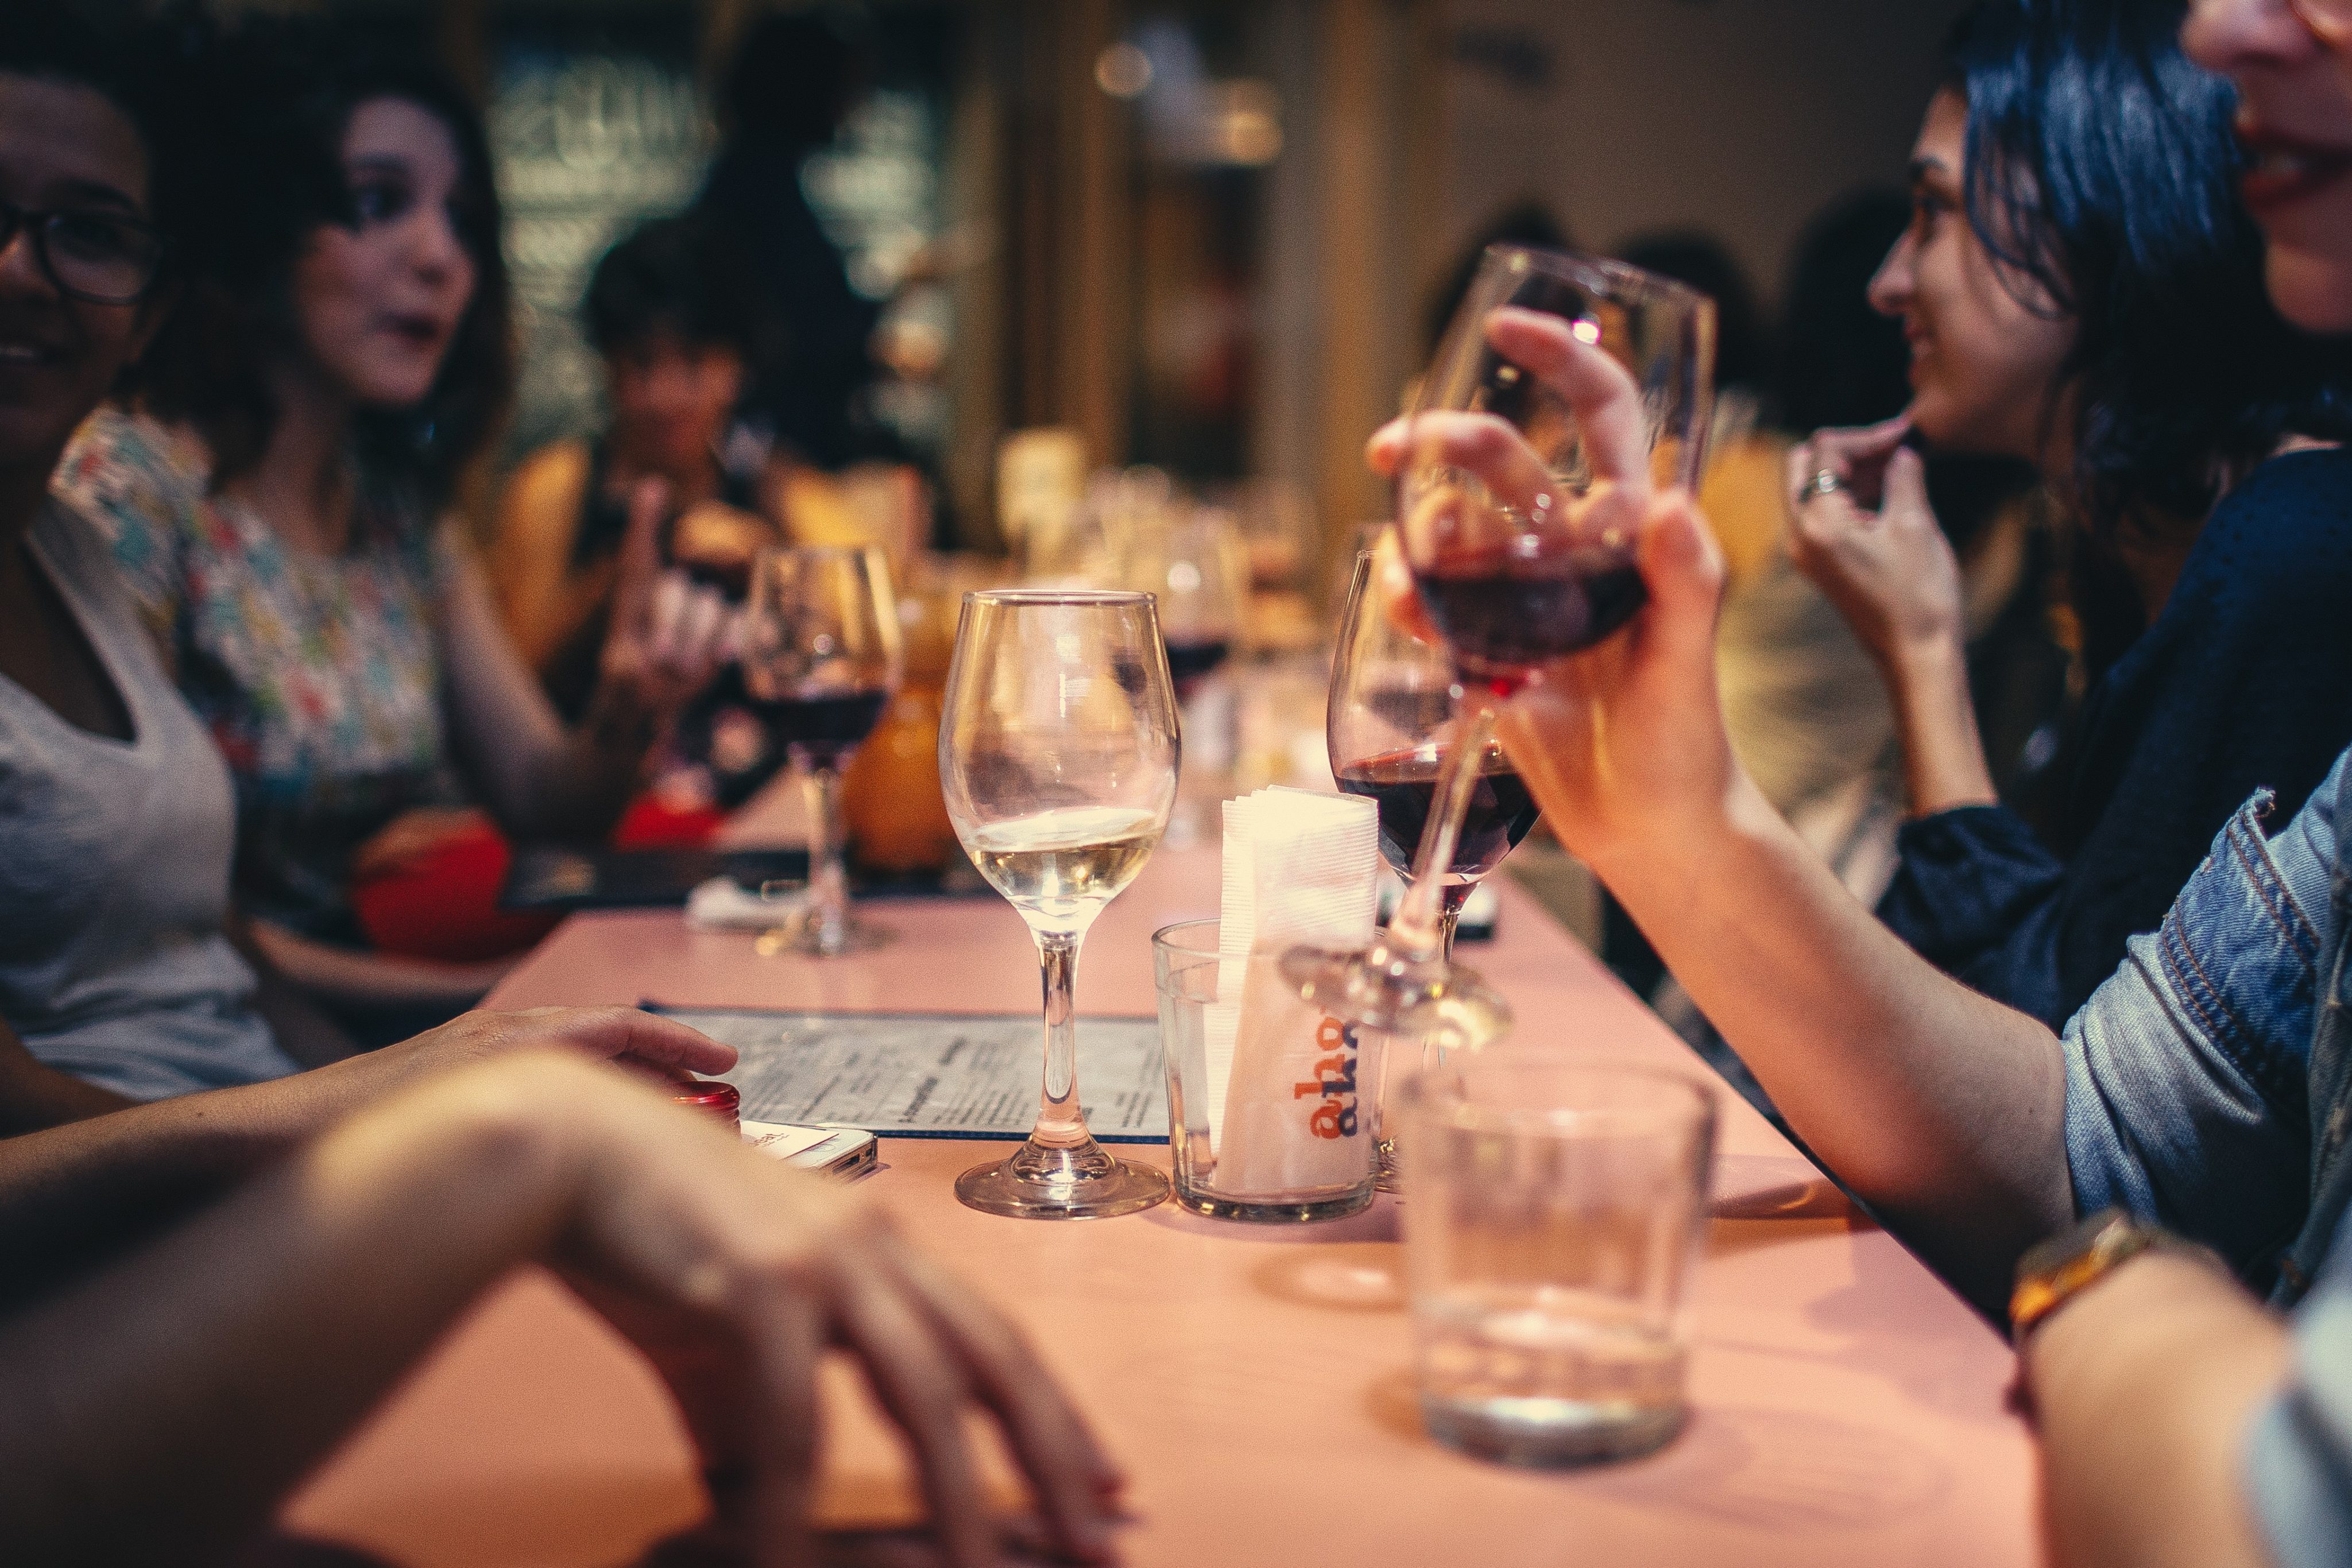 pessoas diversas sentadas em fundo. imagem foco tem duas pessoas, sem identificar gênero, sentados a mesa. As pessoas seguram, cada uma, uma taça de vidro com vinho.